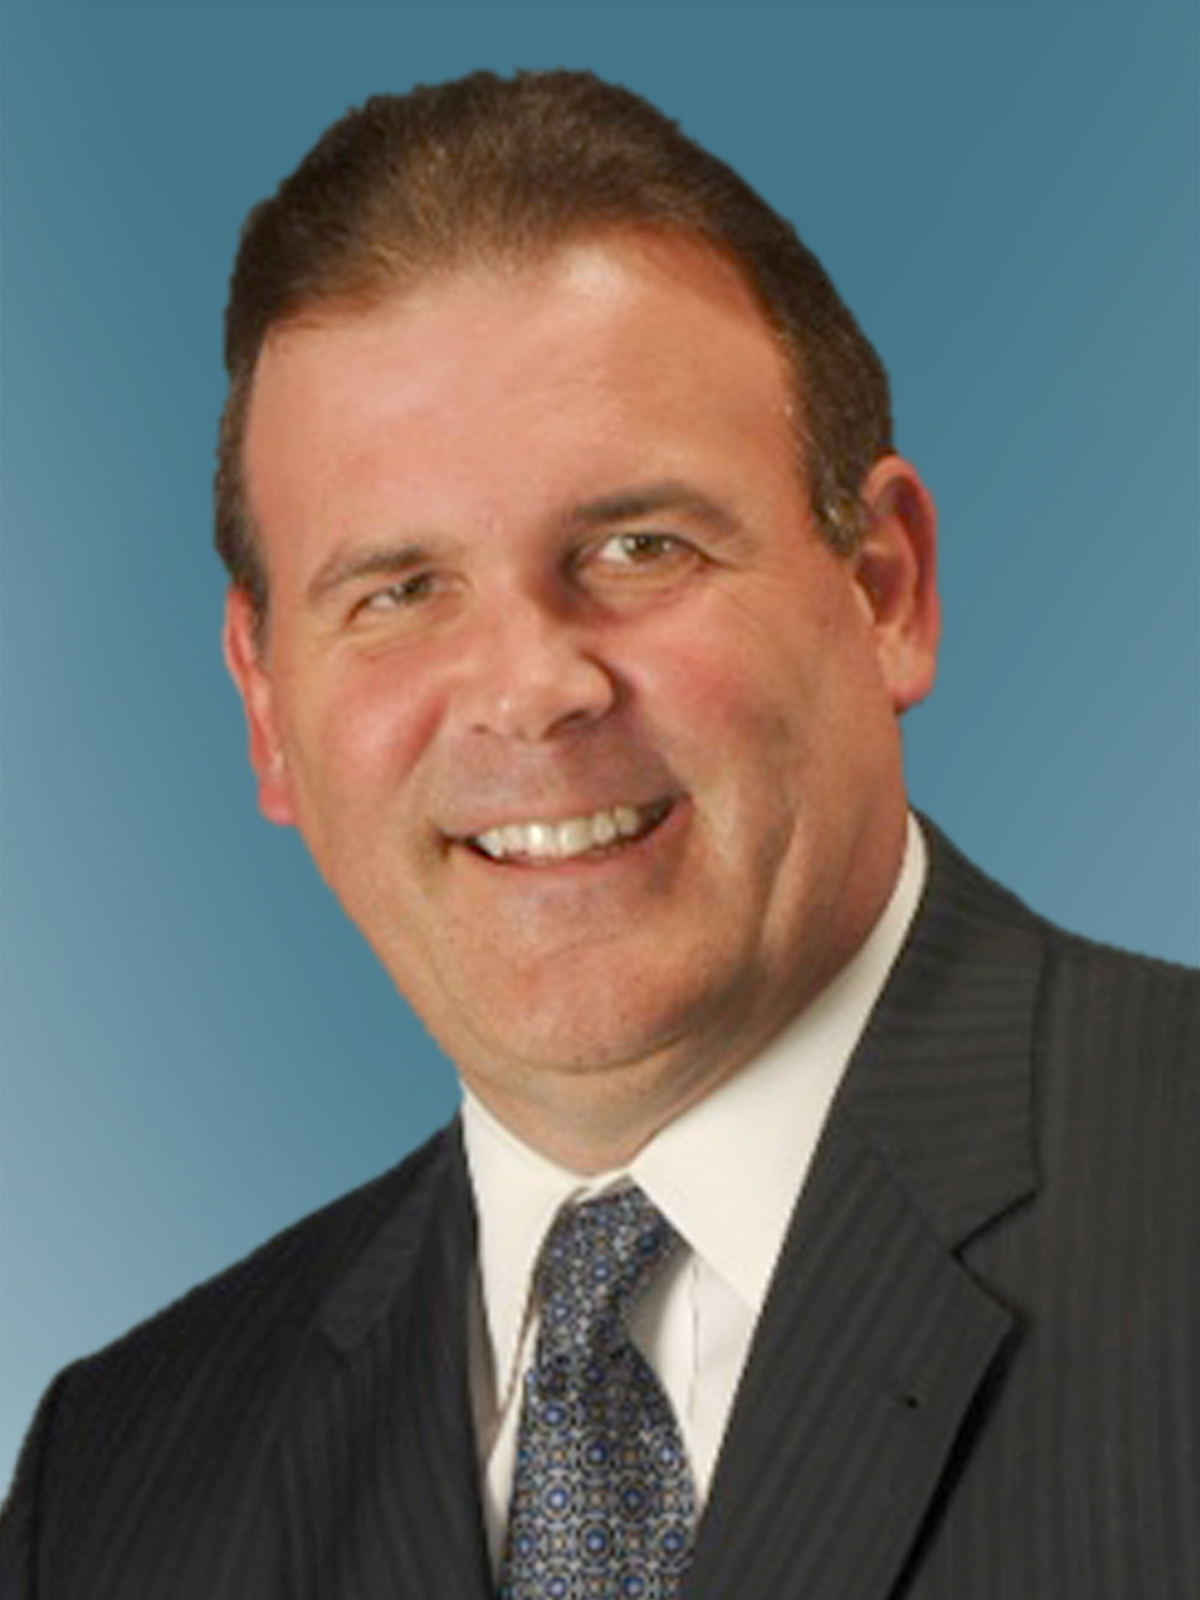 柯克·古特曼 (Kirk A. Gutmann)，行业战略部高级副总裁